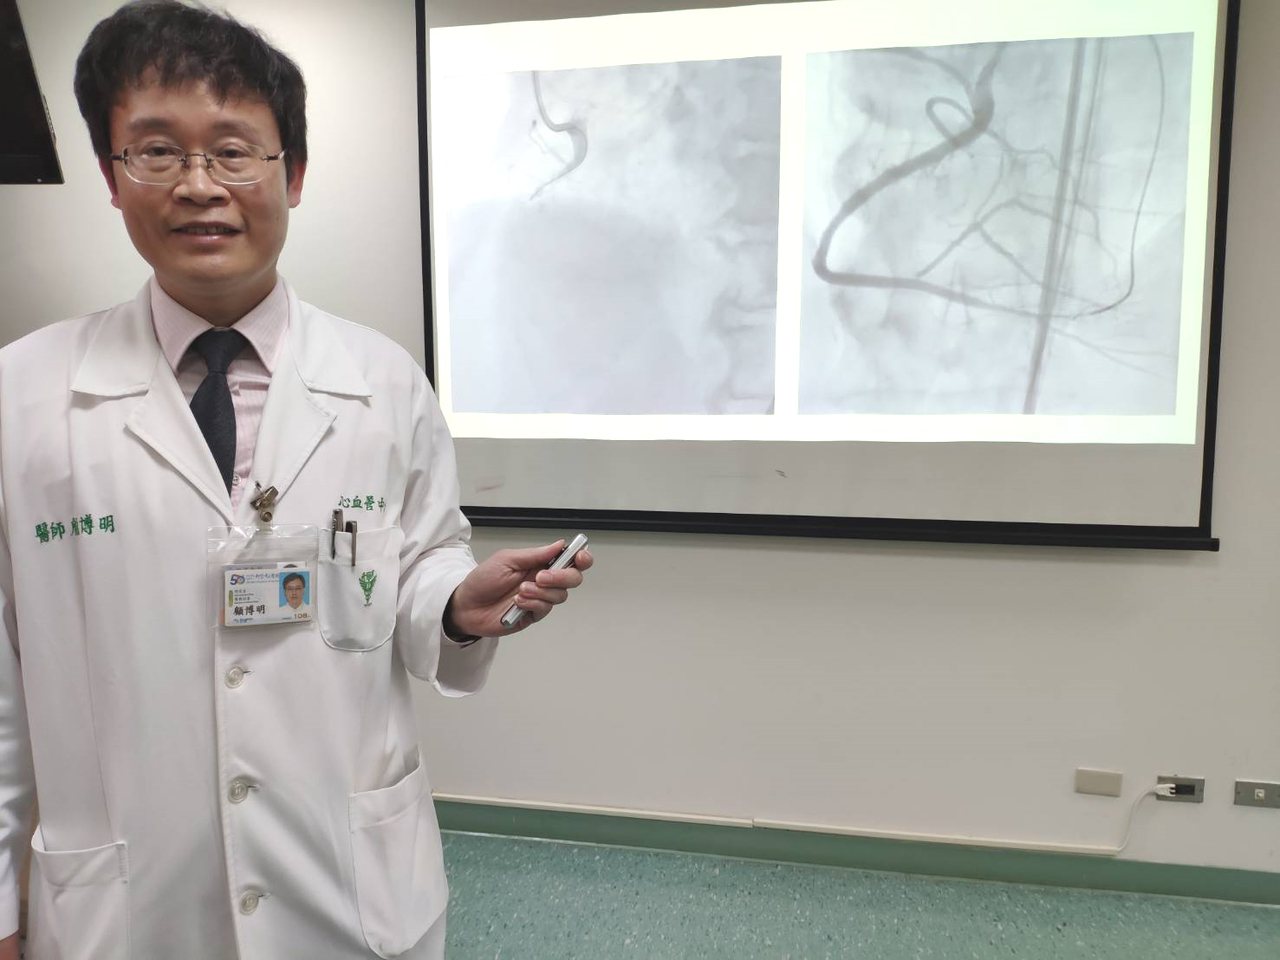 柳營奇美醫院心血管中心主任顧博明執行心導管手術，是台灣少數ADR技術被美國認證的講師。記者謝進盛／攝影